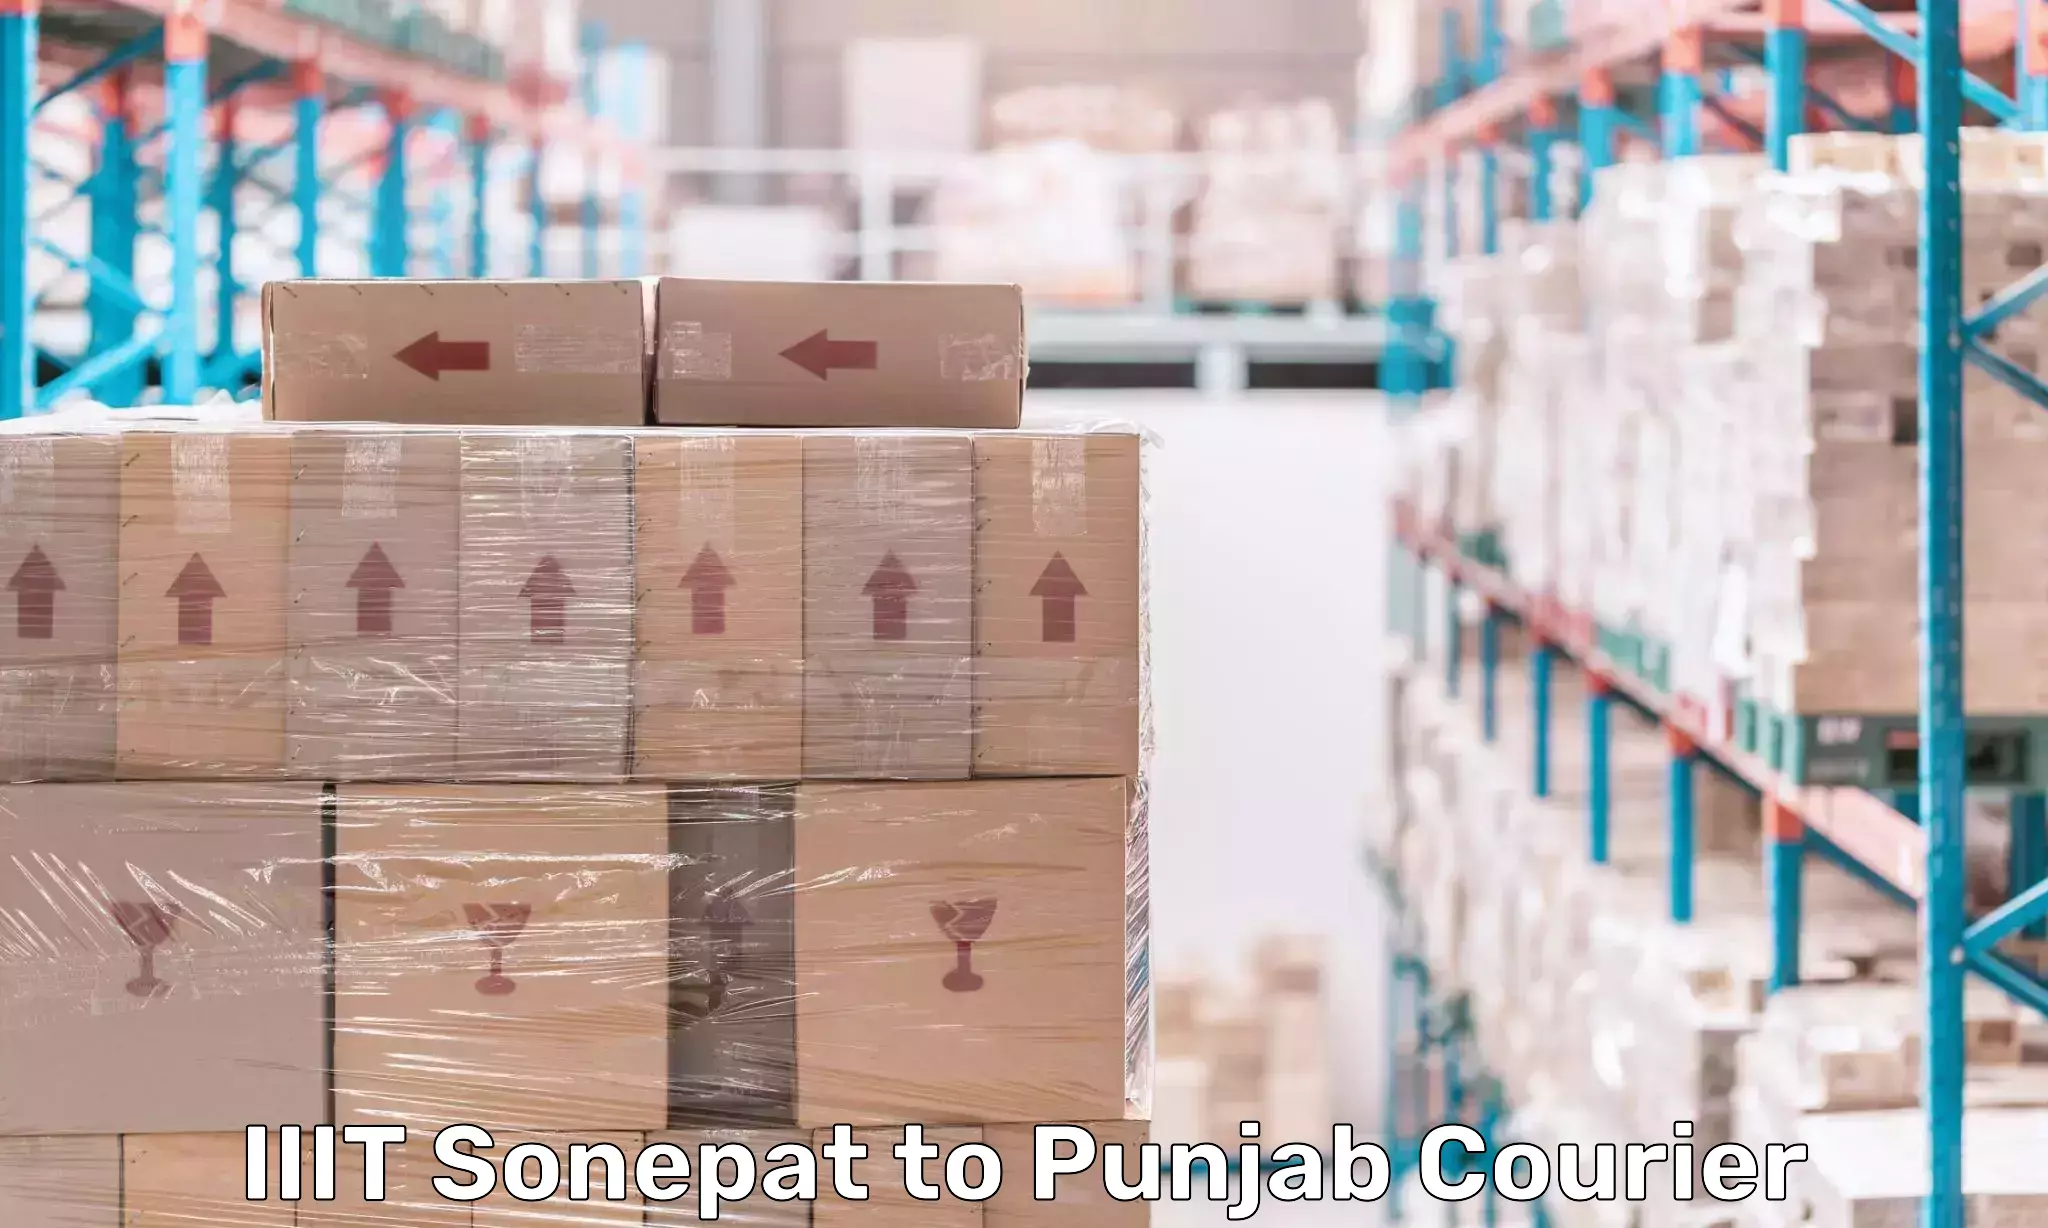 Global delivery options IIIT Sonepat to Punjab